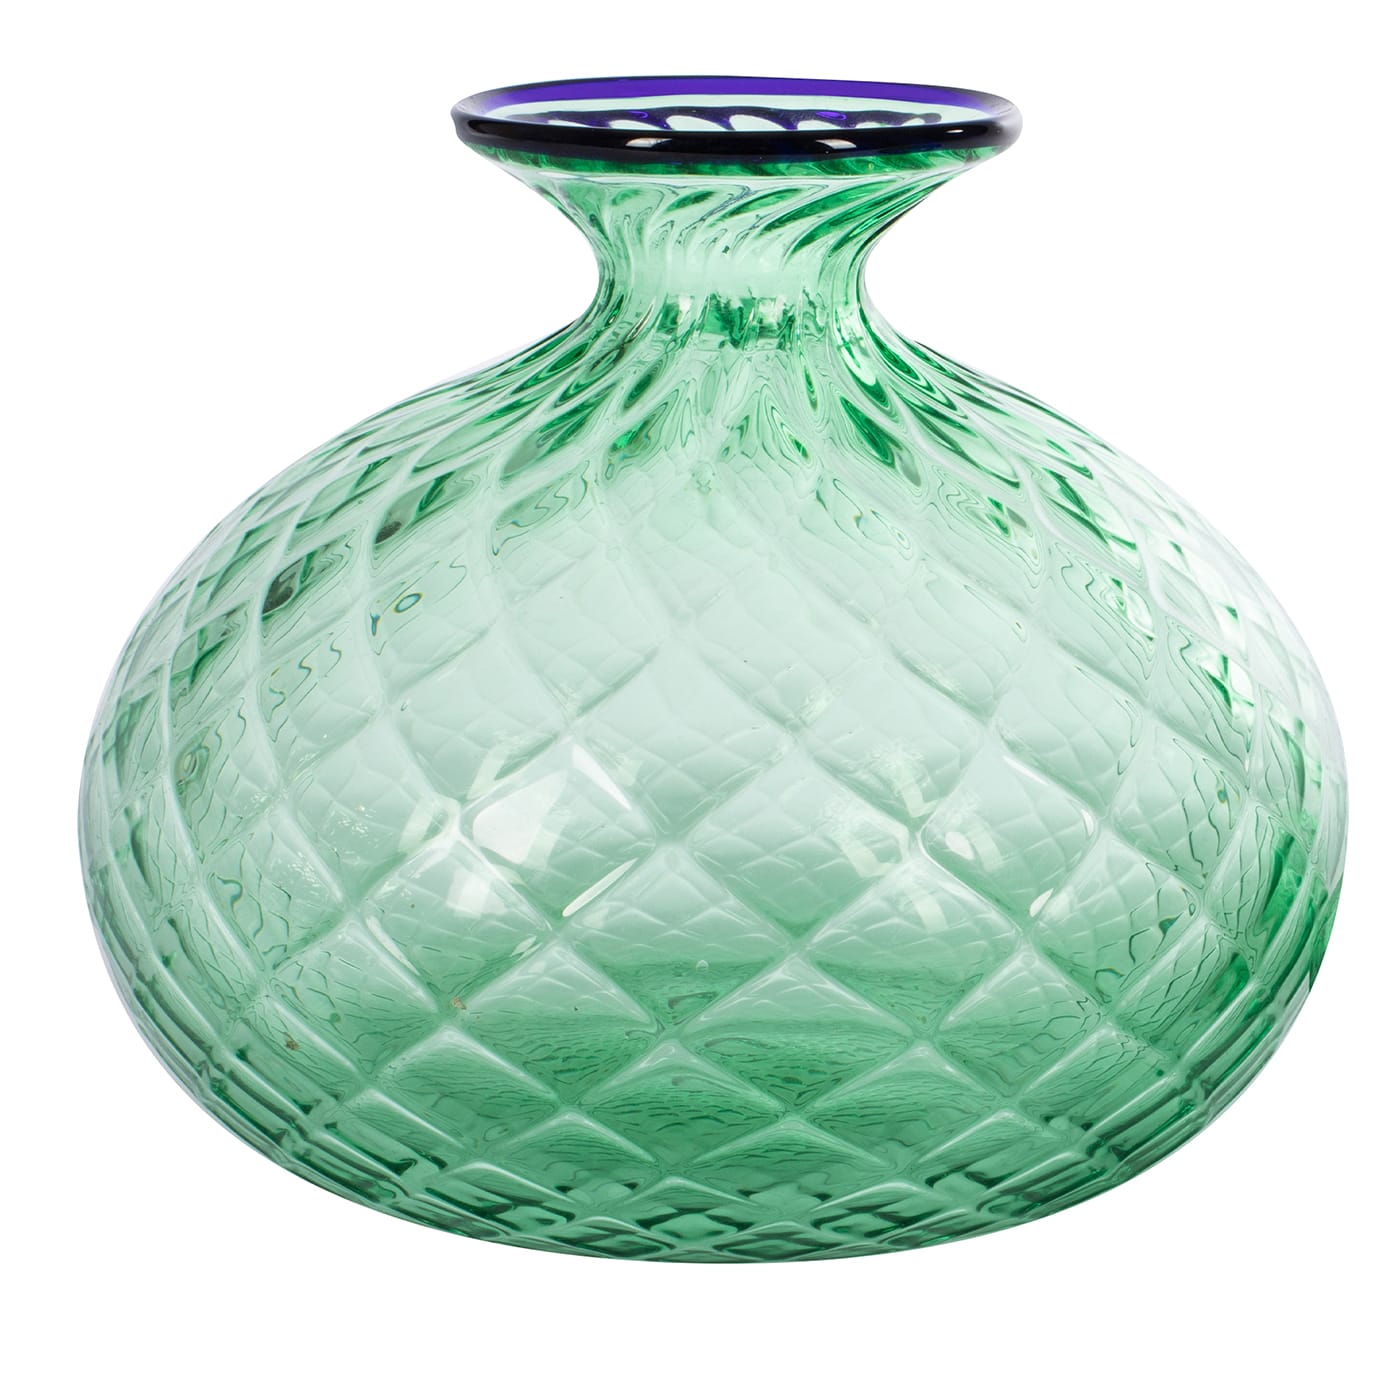 Balloton Green Vase with Blue Rim - Officine di Murano 1295